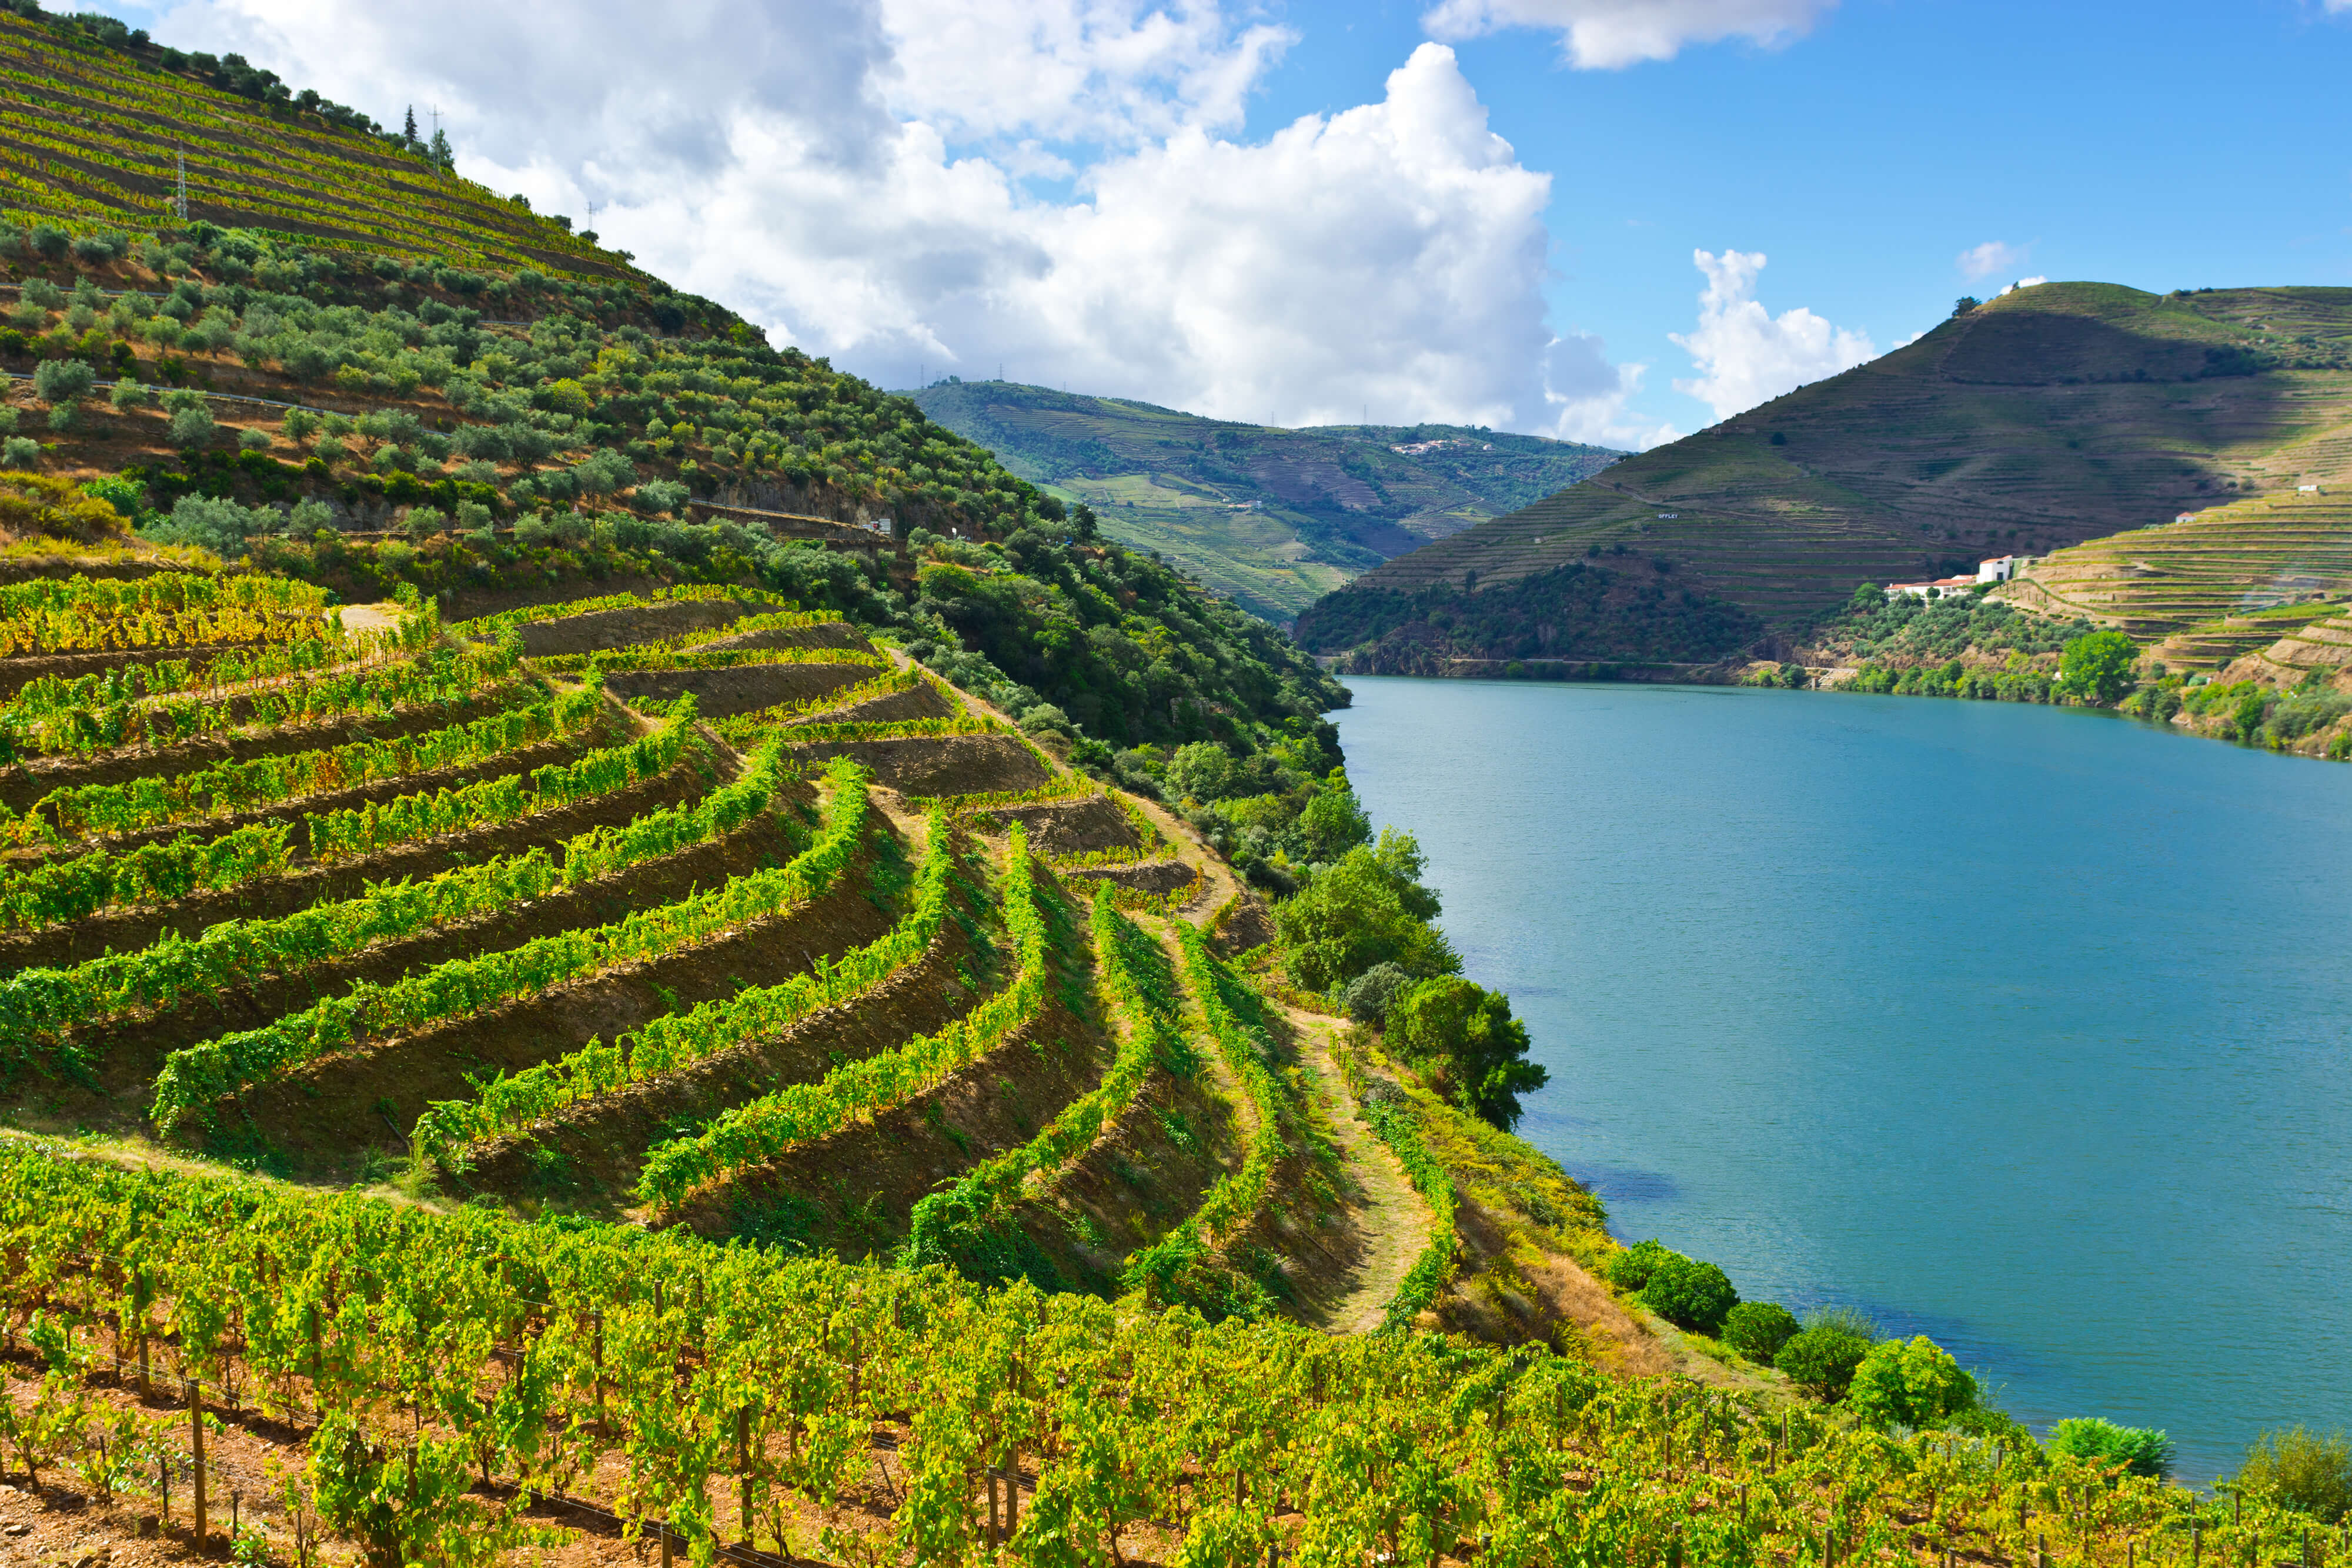 Wines of Earth vous invite à découvrir le vignoble du Portugal, un pays producteur en pleine révolution. Retrouvez aussi nos conseils de dégustation et notre sélection de vins portugais pour bien débuter votre initiation et partager ces quelques pépites œnologiques avec vos proches.